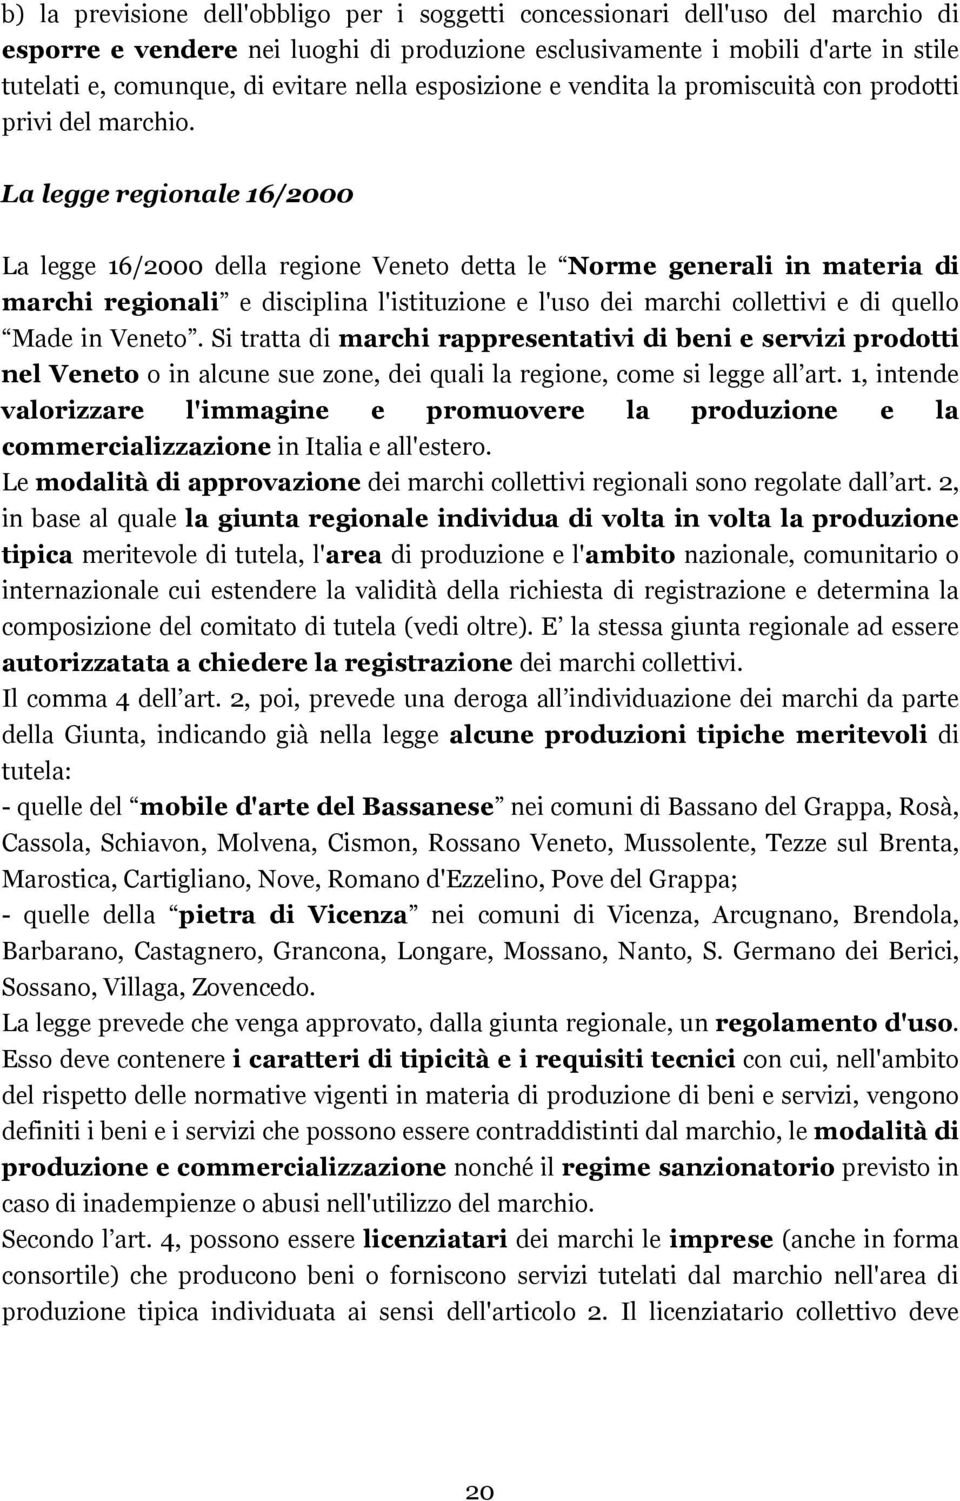 La legge regionale 16/2000 La legge 16/2000 della regione Veneto detta le Norme generali in materia di marchi regionali e disciplina l'istituzione e l'uso dei marchi collettivi e di quello Made in